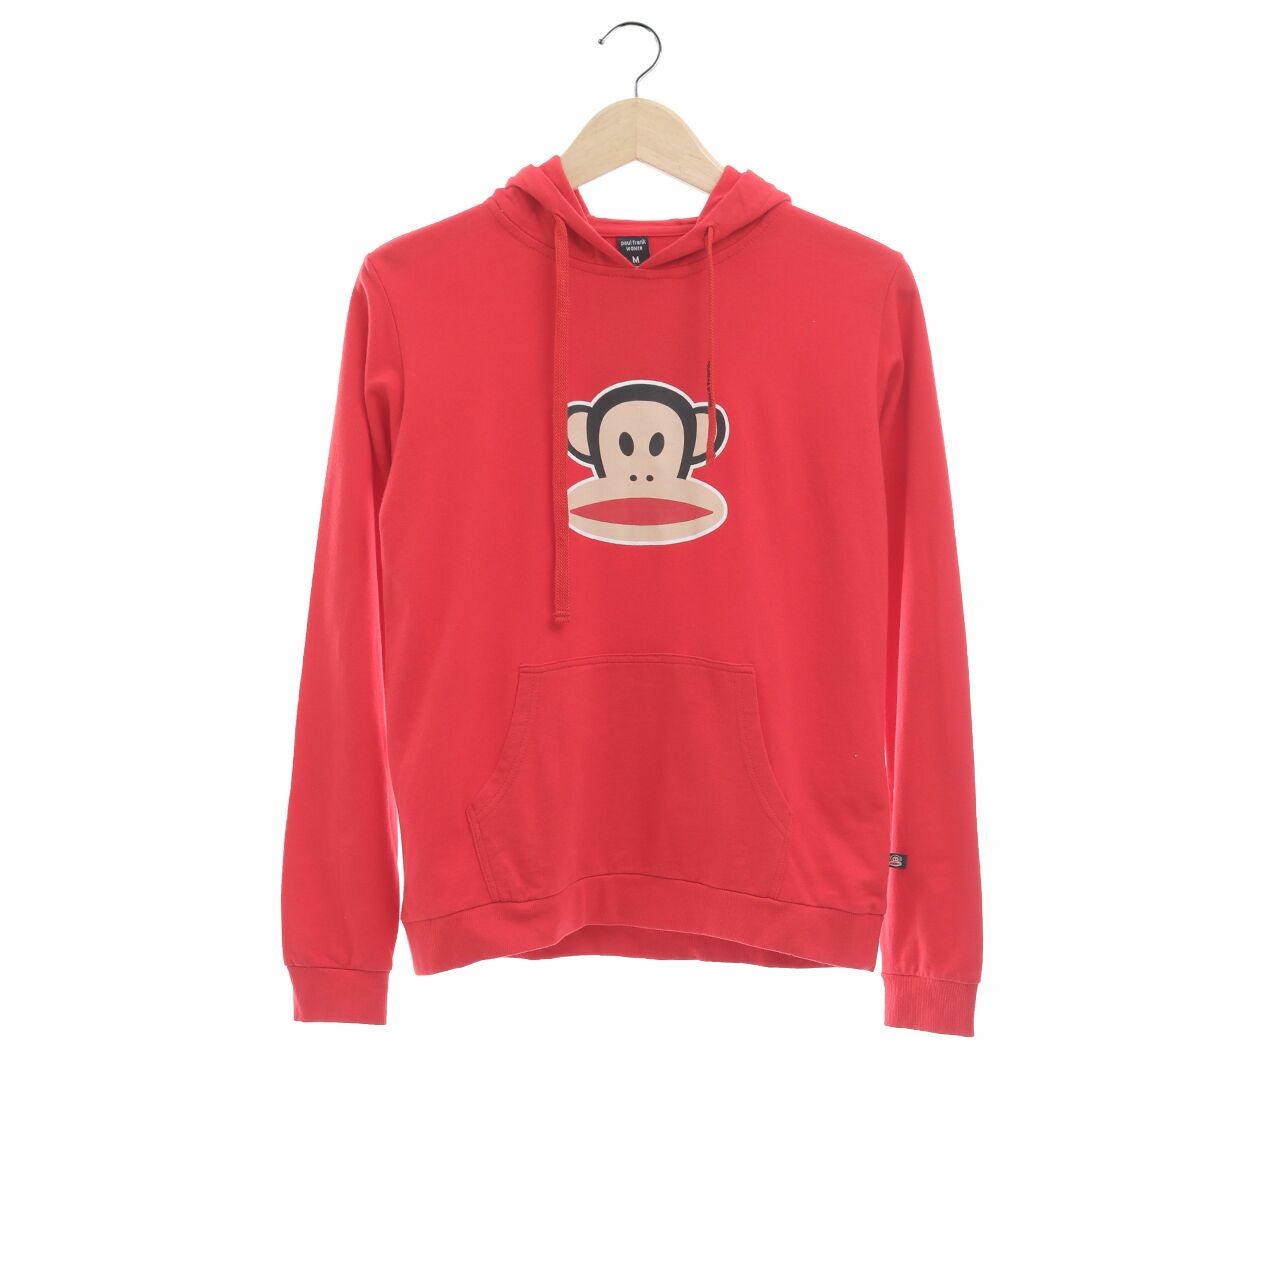 Paul Frank Red Hoodie Sweater